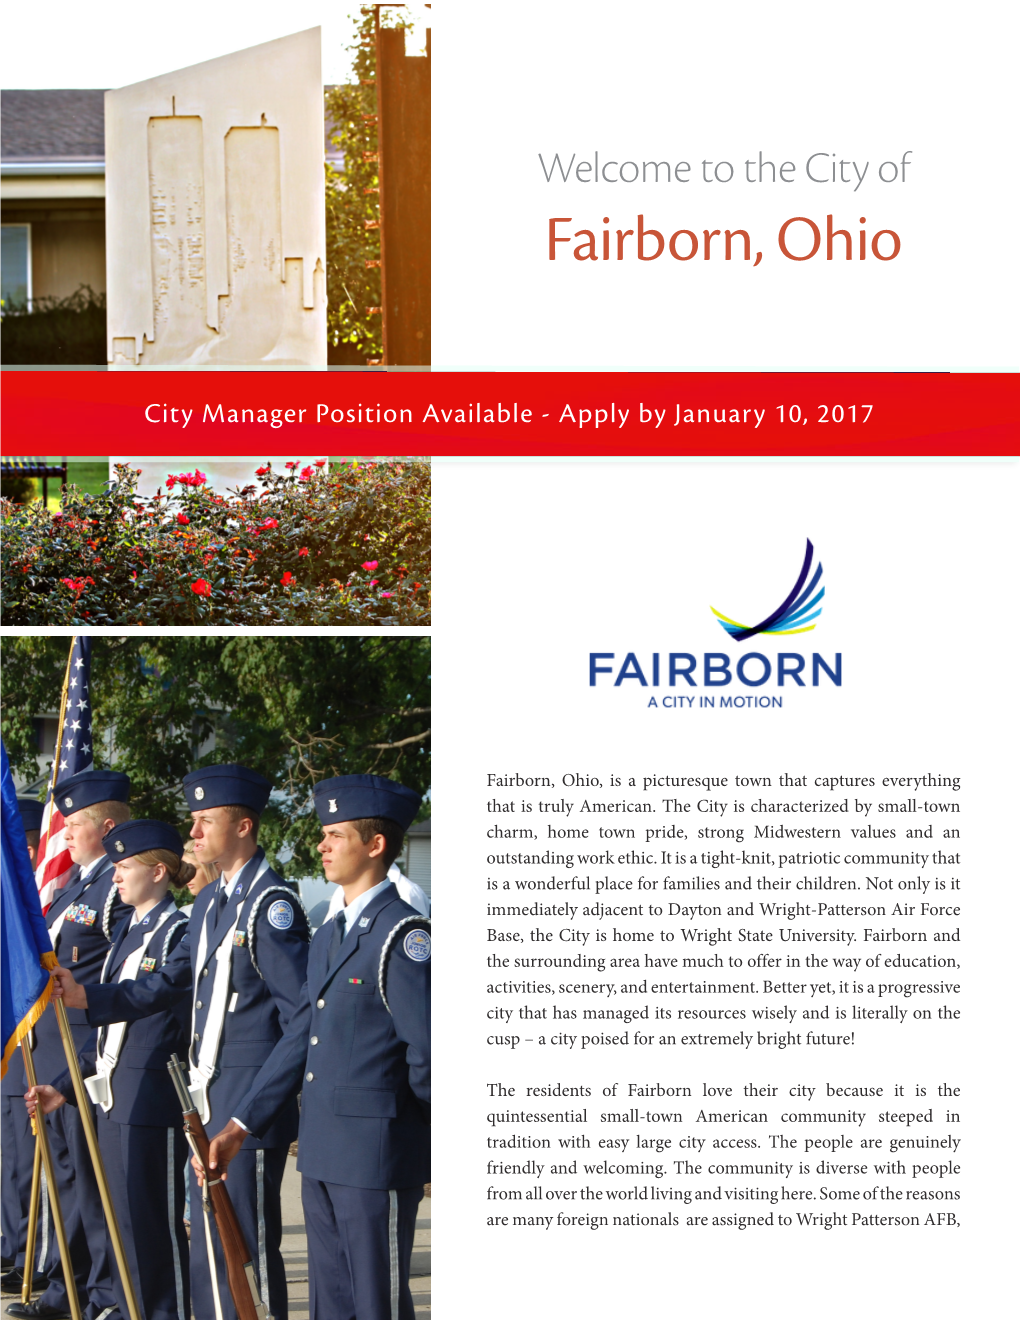 Fairborn, Ohio